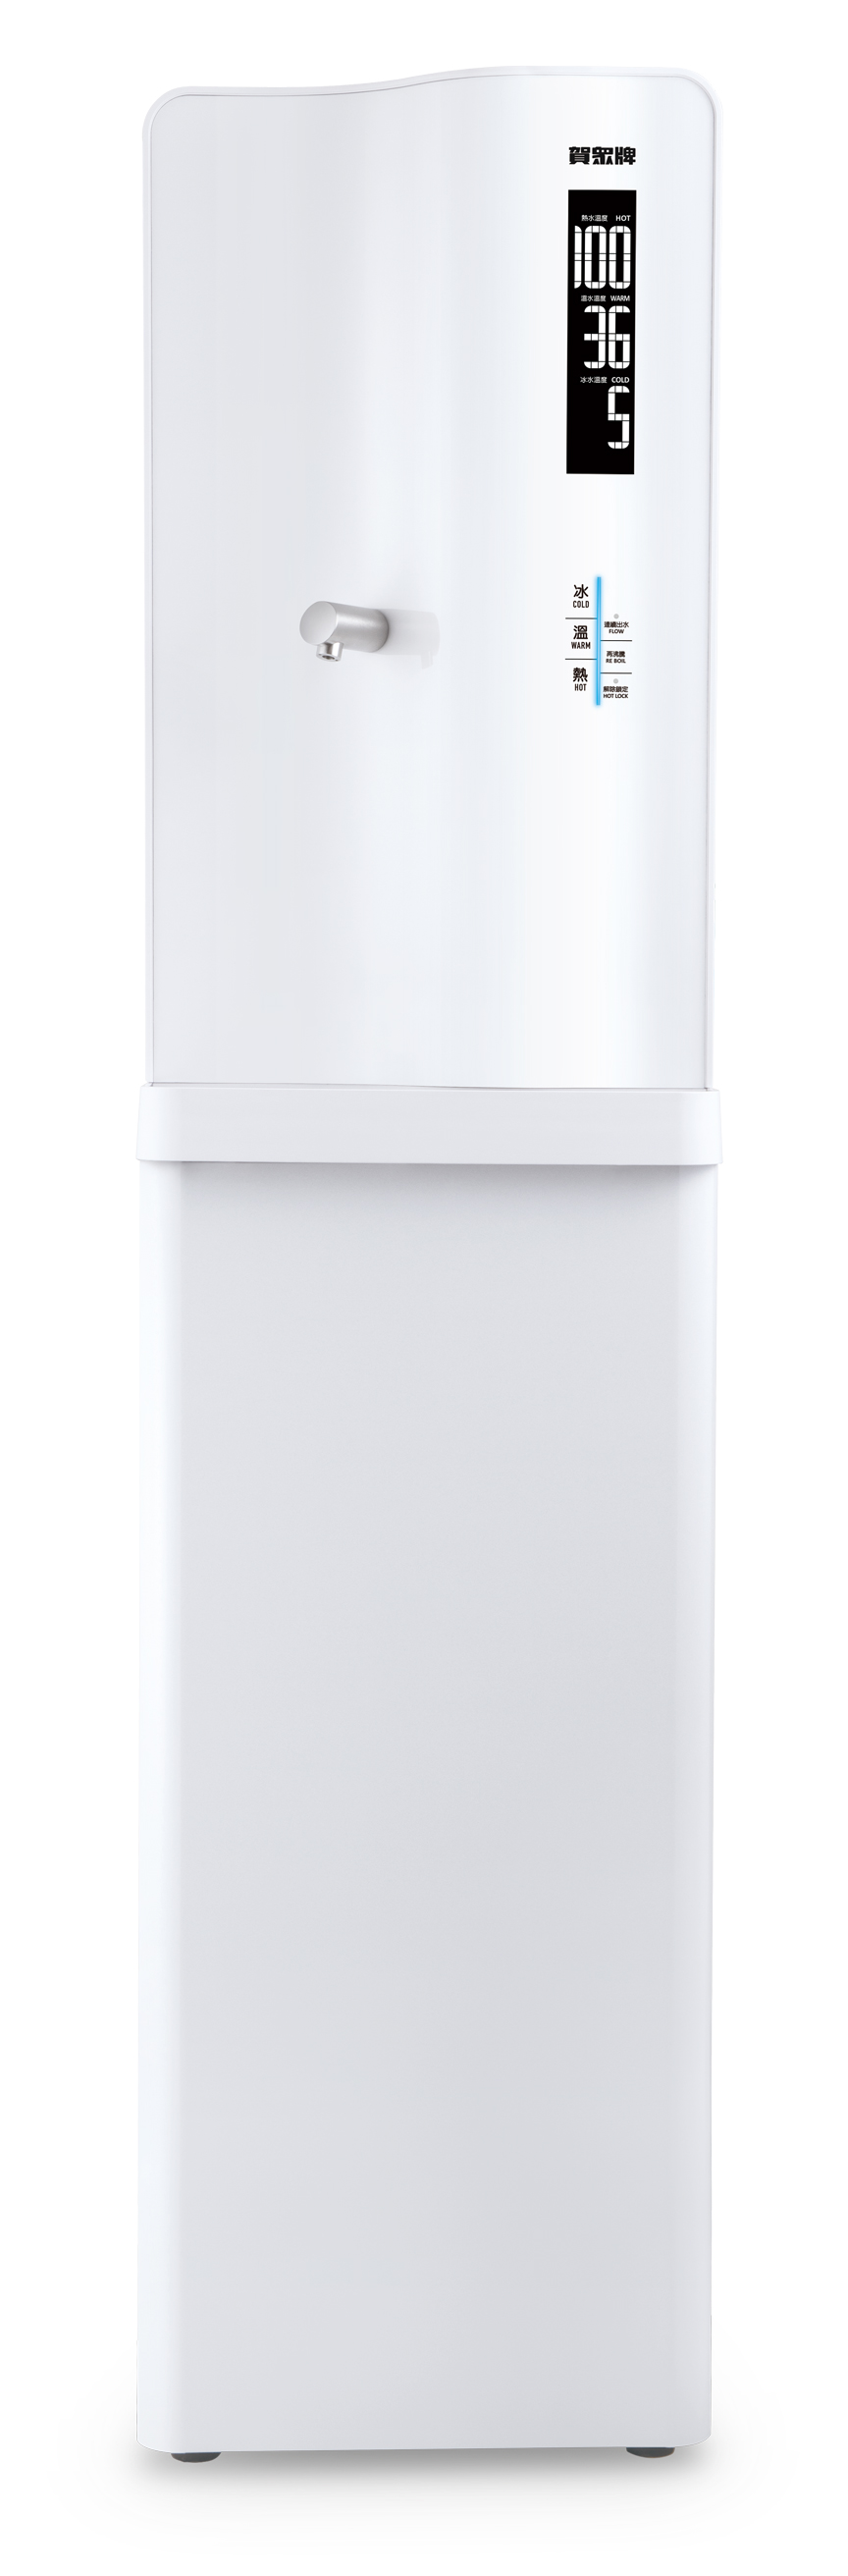 Serenity Computerized Water Dispenser / INNOTRIO CO., LTD.